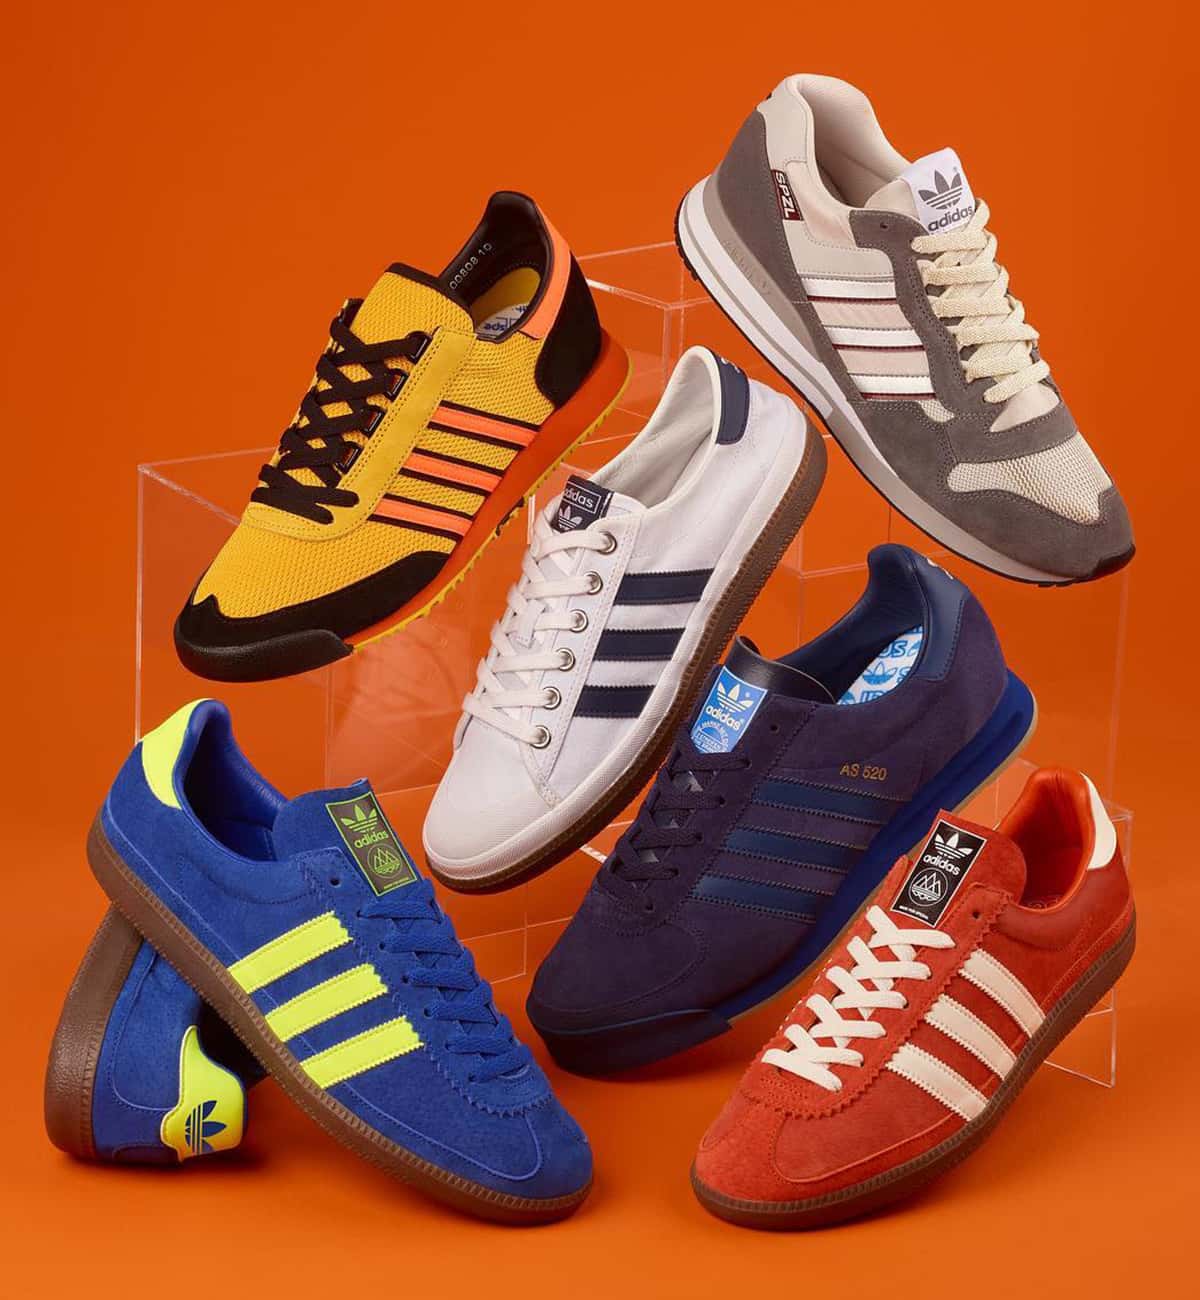 아디다스 오리지널스 스페지알 SS19 스니커즈(adidas Originals by SPEZIAL SS19 Sneakers)